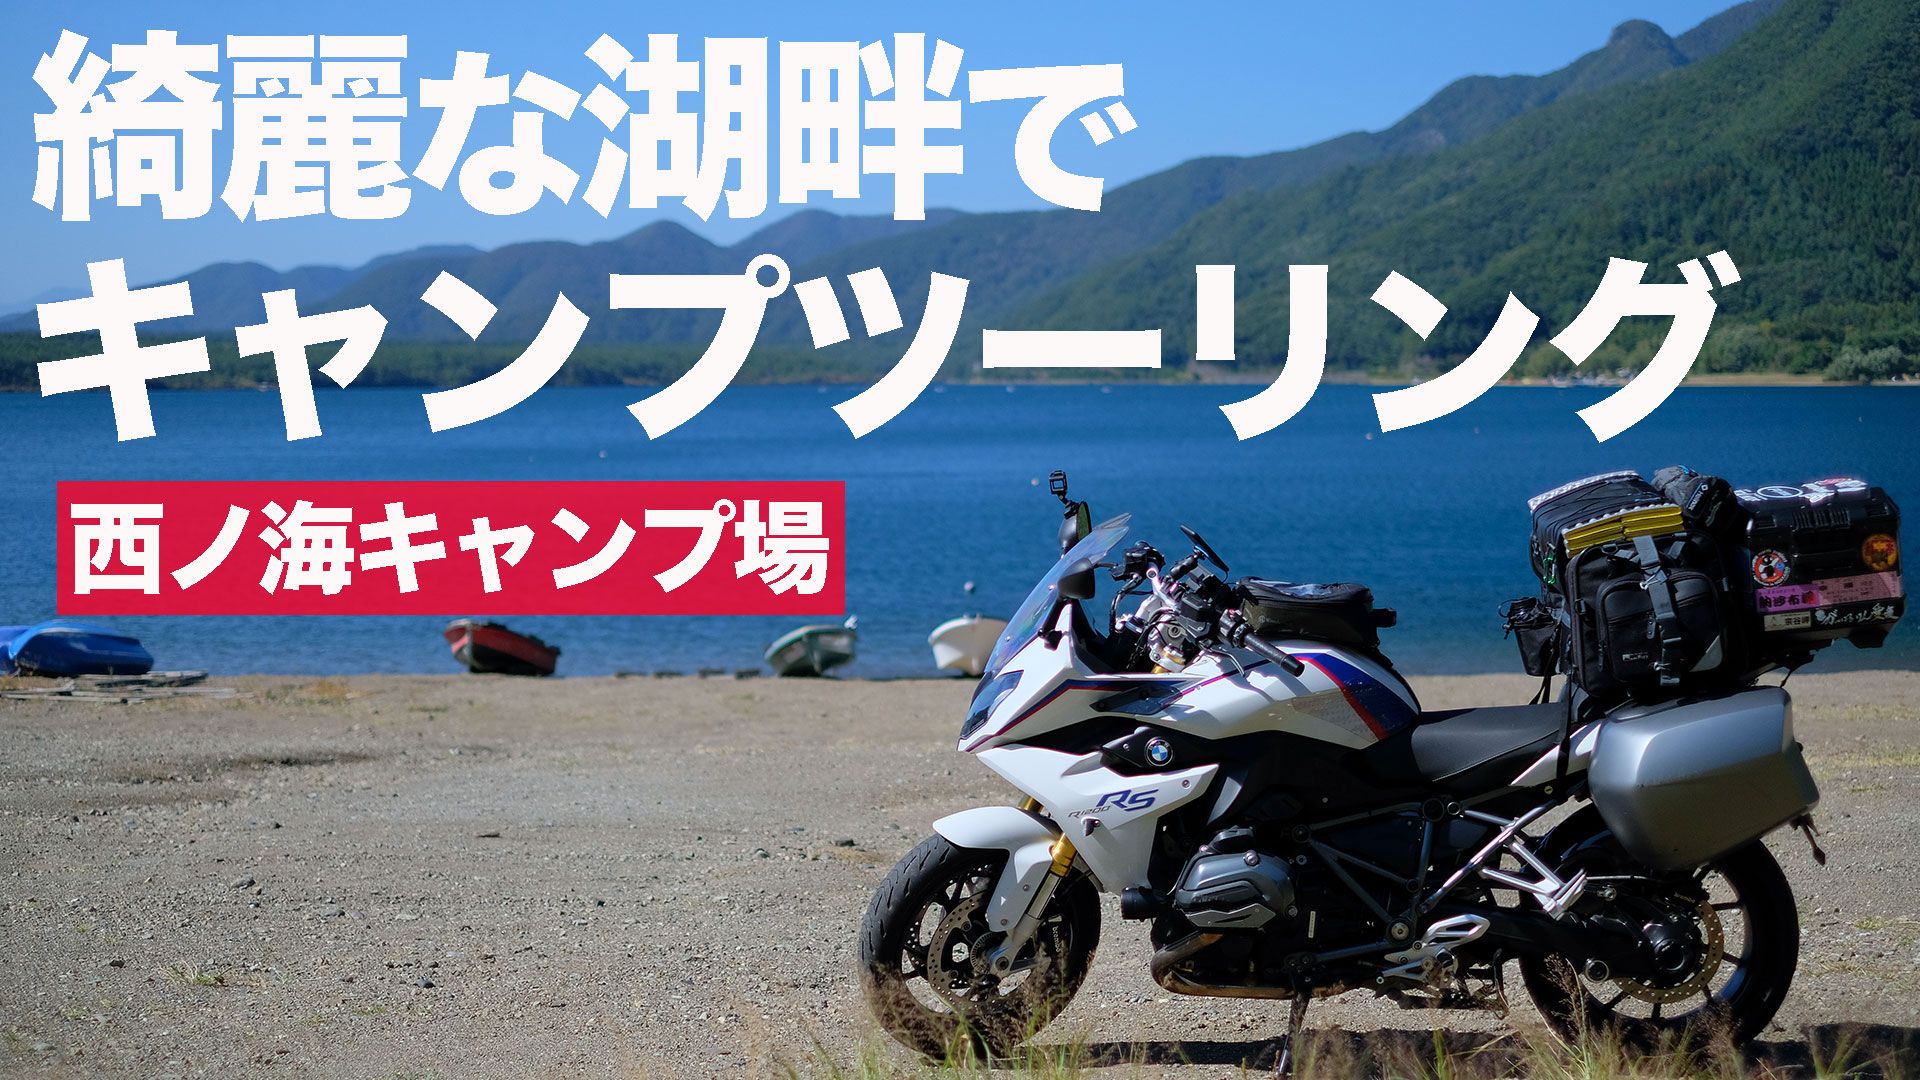 ソロキャンプ 富士山周辺 穴場キャンプ場 西ノ海キャンプ場 キャンプツーリング ハレノチバイクブログ